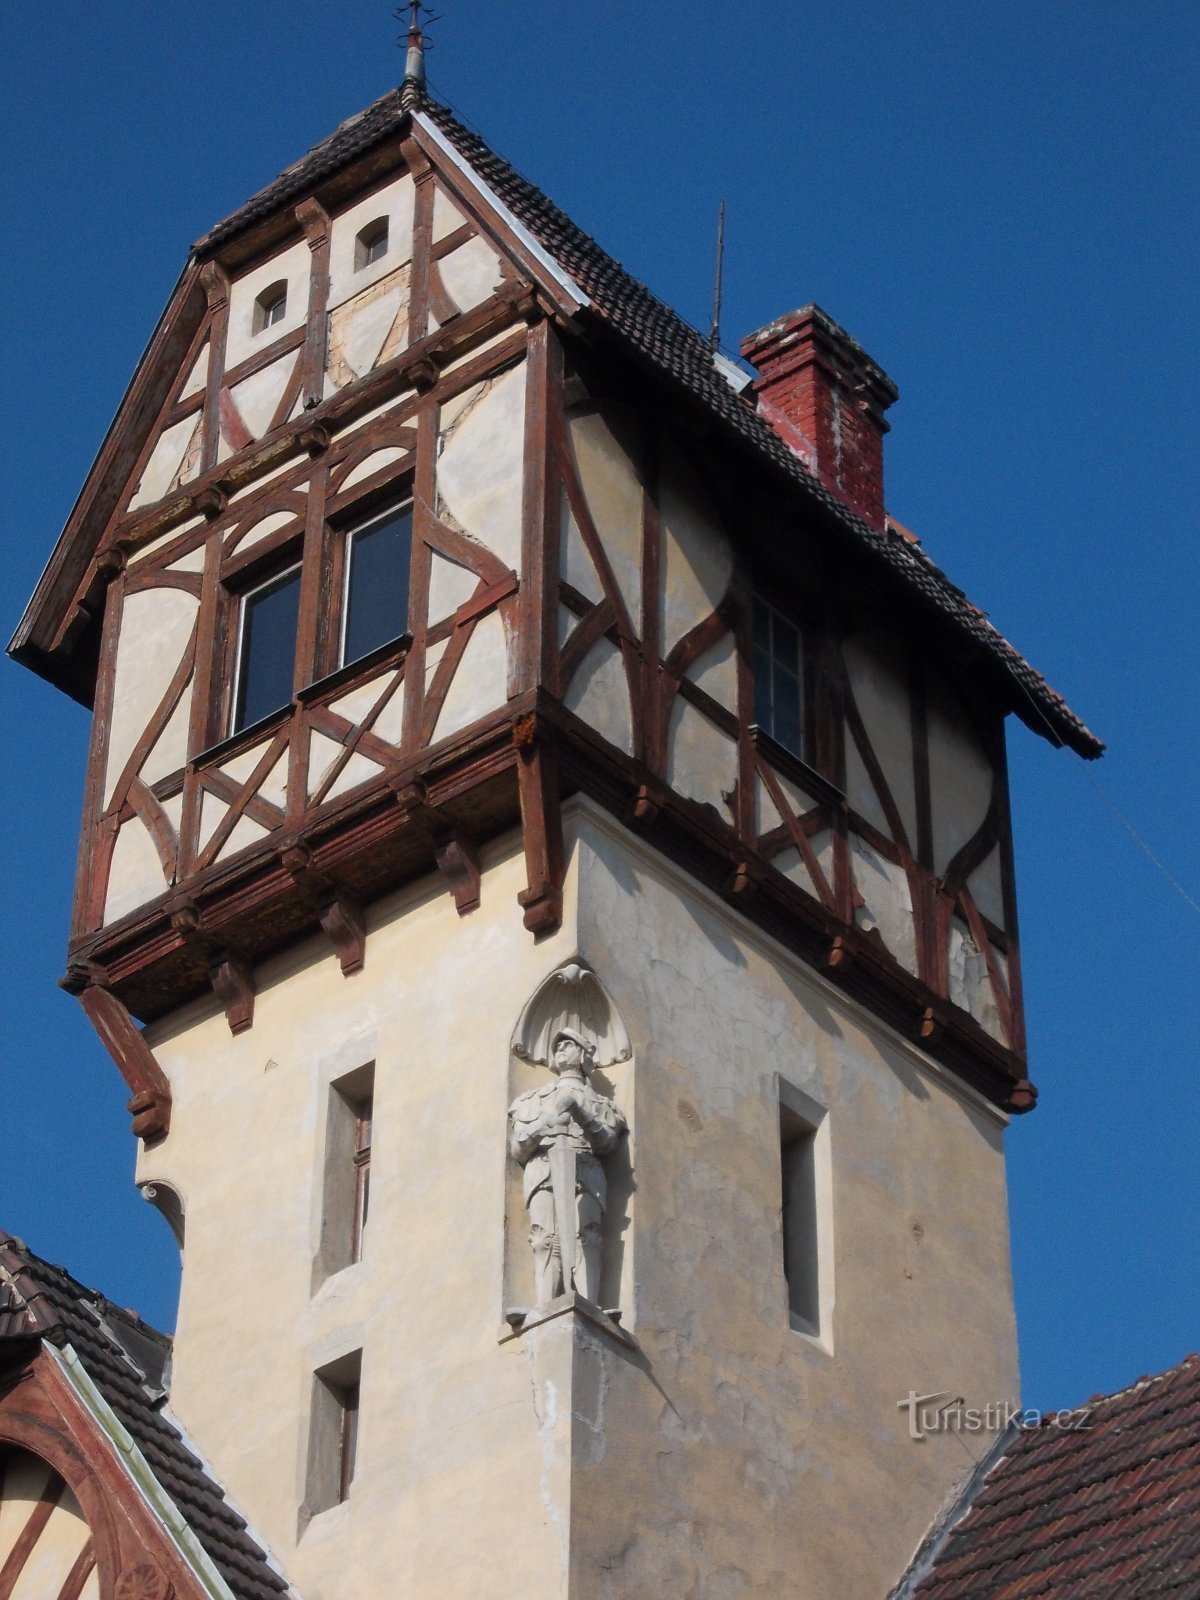 Hiša na stolpu in vitez